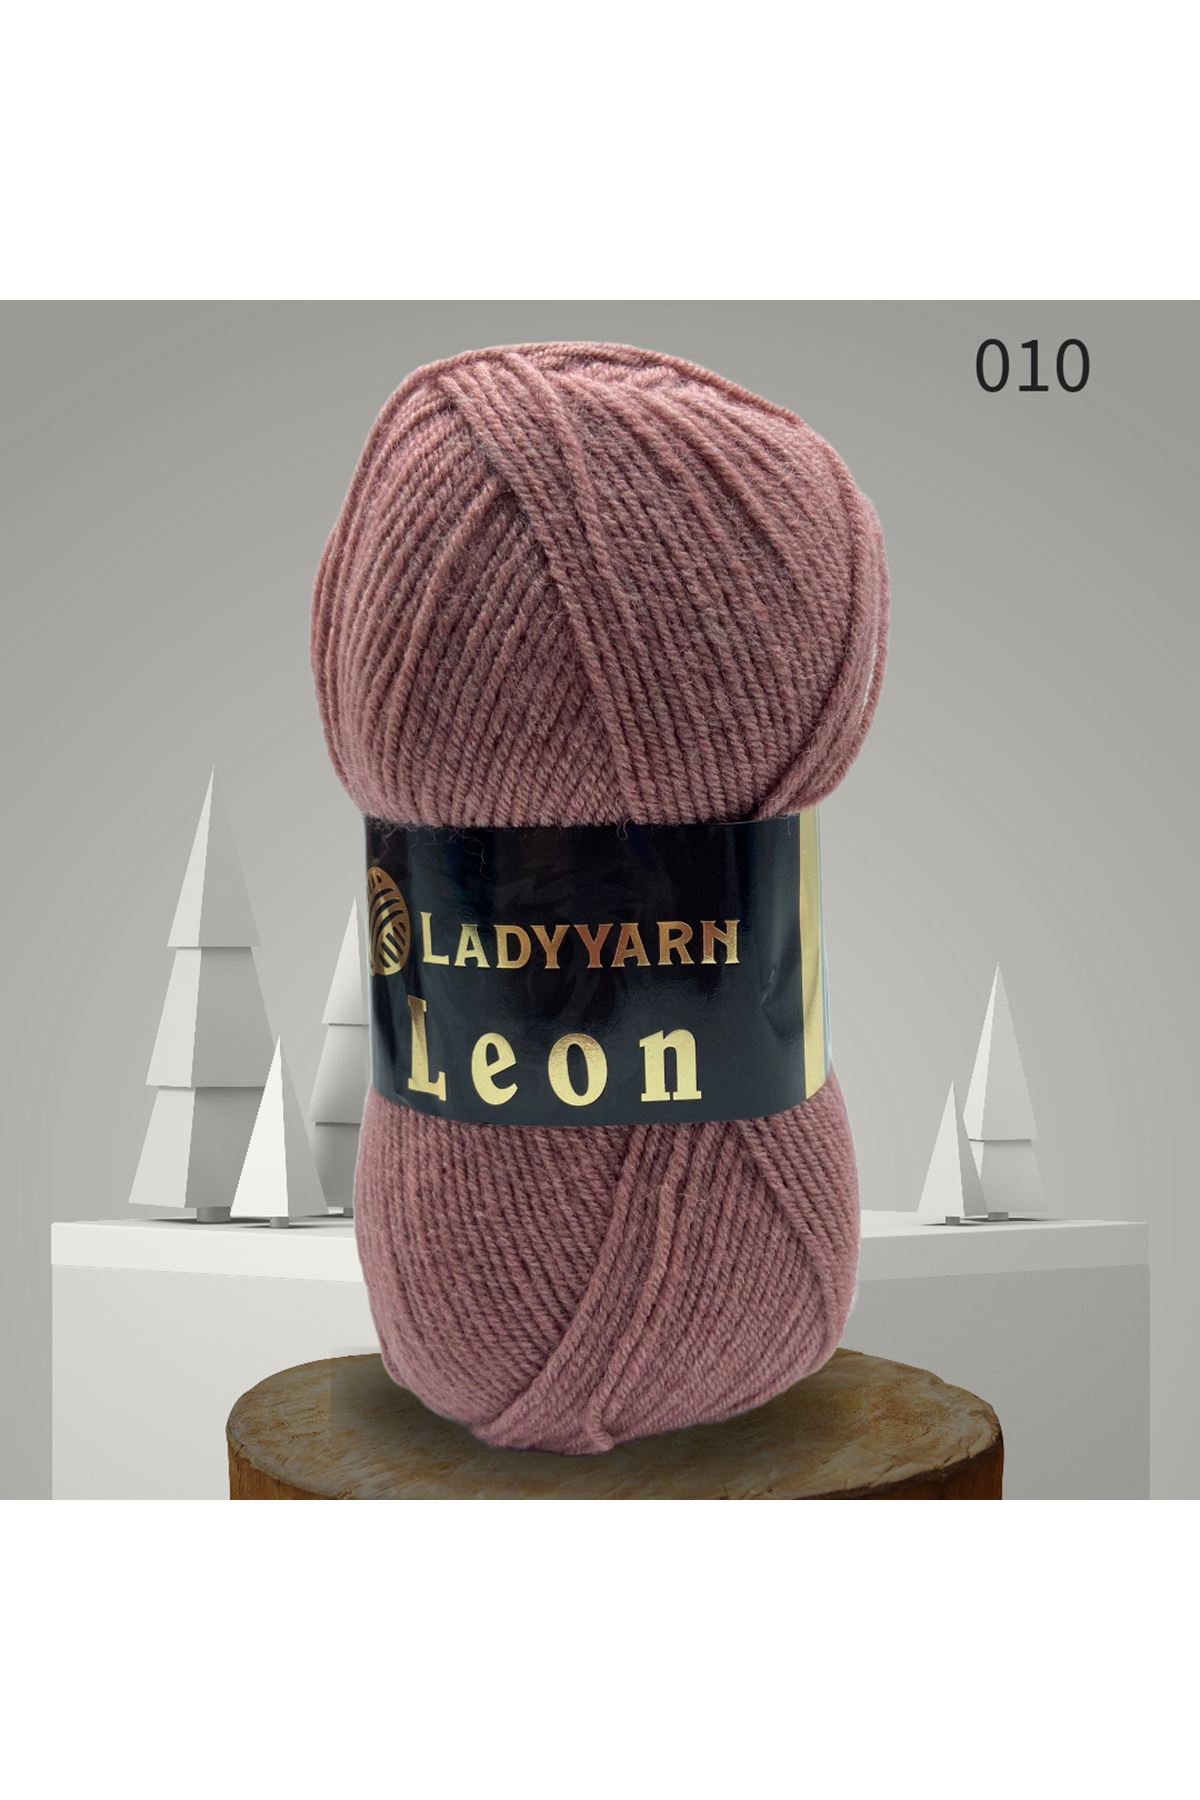 Lady Yarn Leon %49 Yünlü 010 Rose